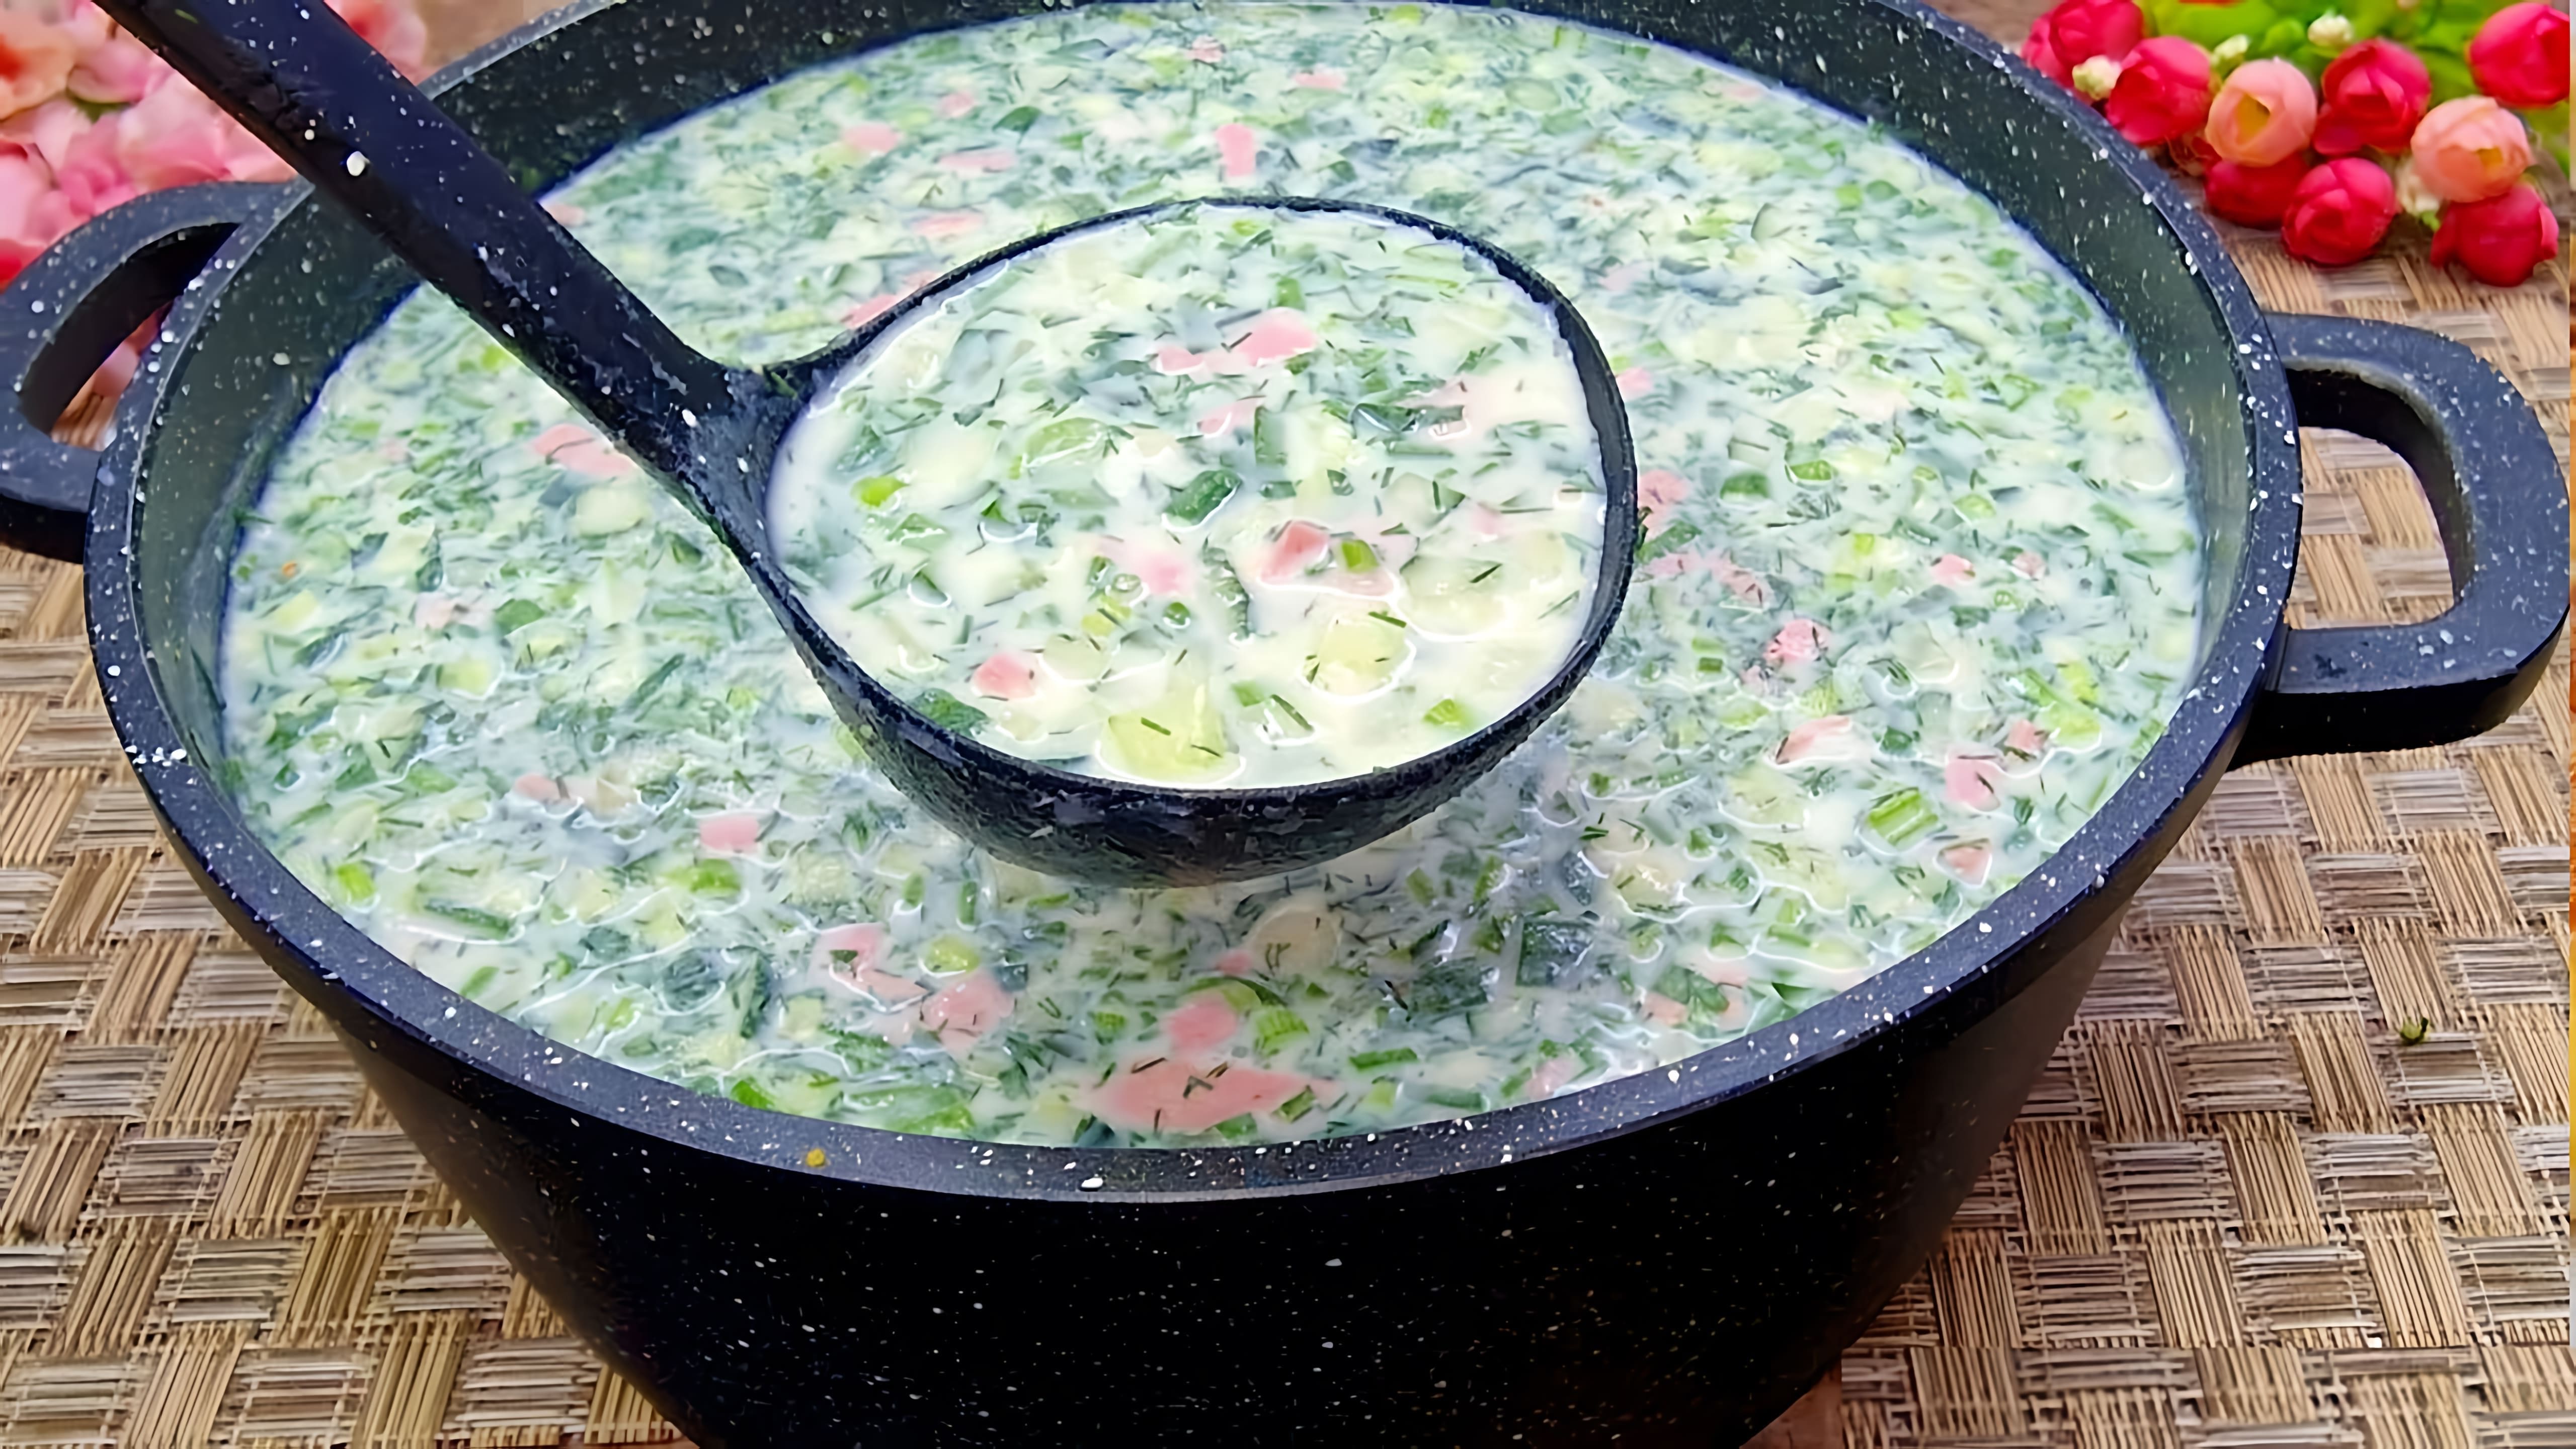 В этом видео демонстрируется рецепт приготовления холодного супа - окрошки на кефире